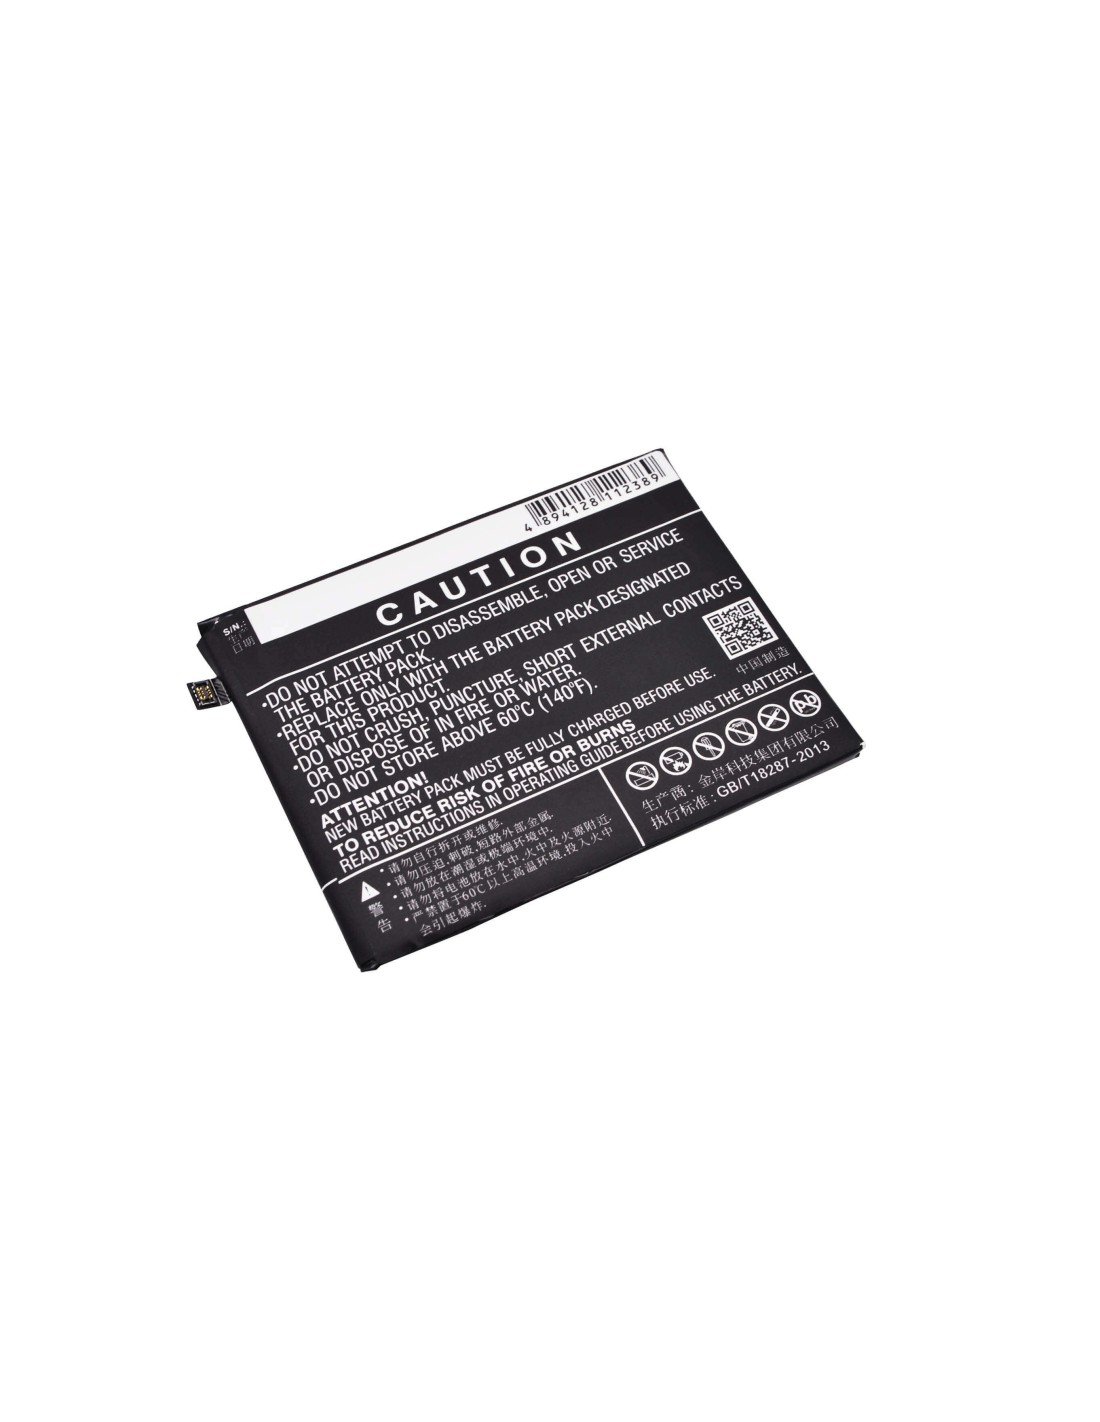 Battery for Lenovo K5 Note, K52t38, Lemon K5 Note Dual SIM TD-LTE 3.8V, 3400mAh - 12.92Wh